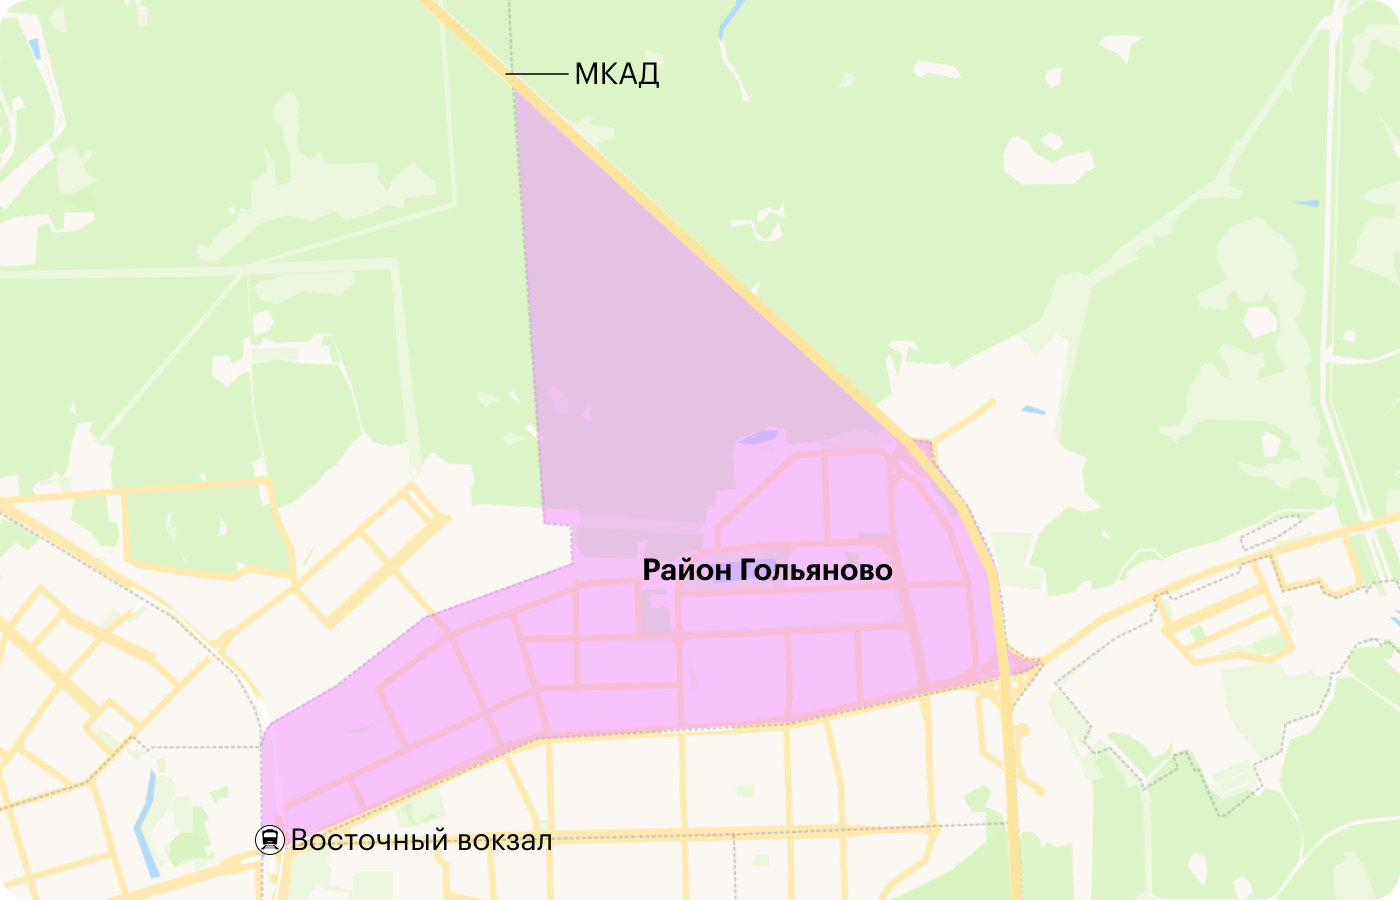 Район Гольяново находится в Восточном административном округе Москвы. Источник: yandex.ru